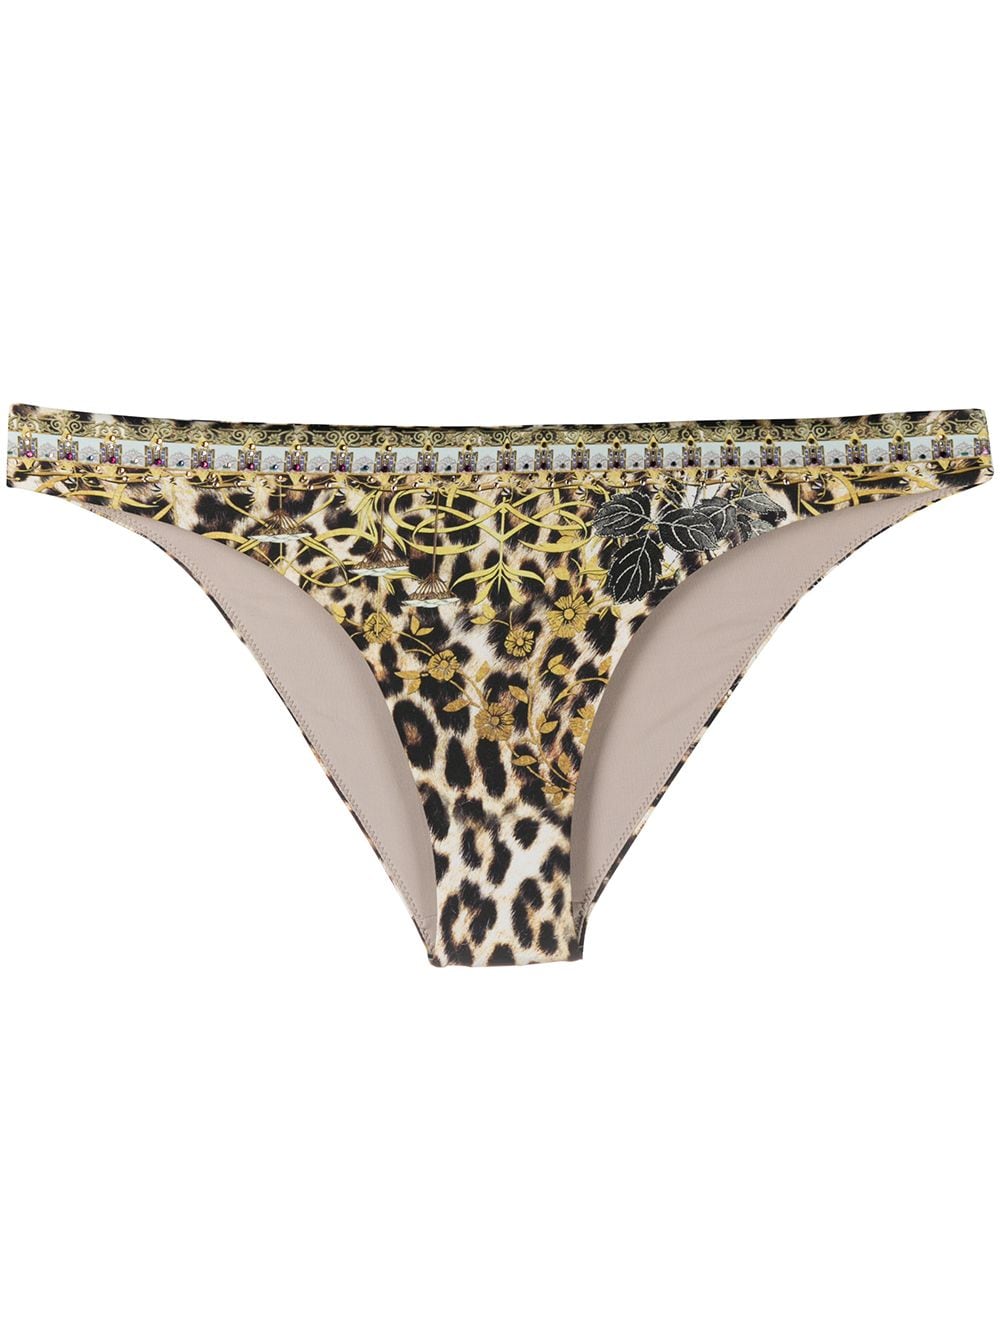 фото Camilla декорированные плавки бикини с леопардовым принтом